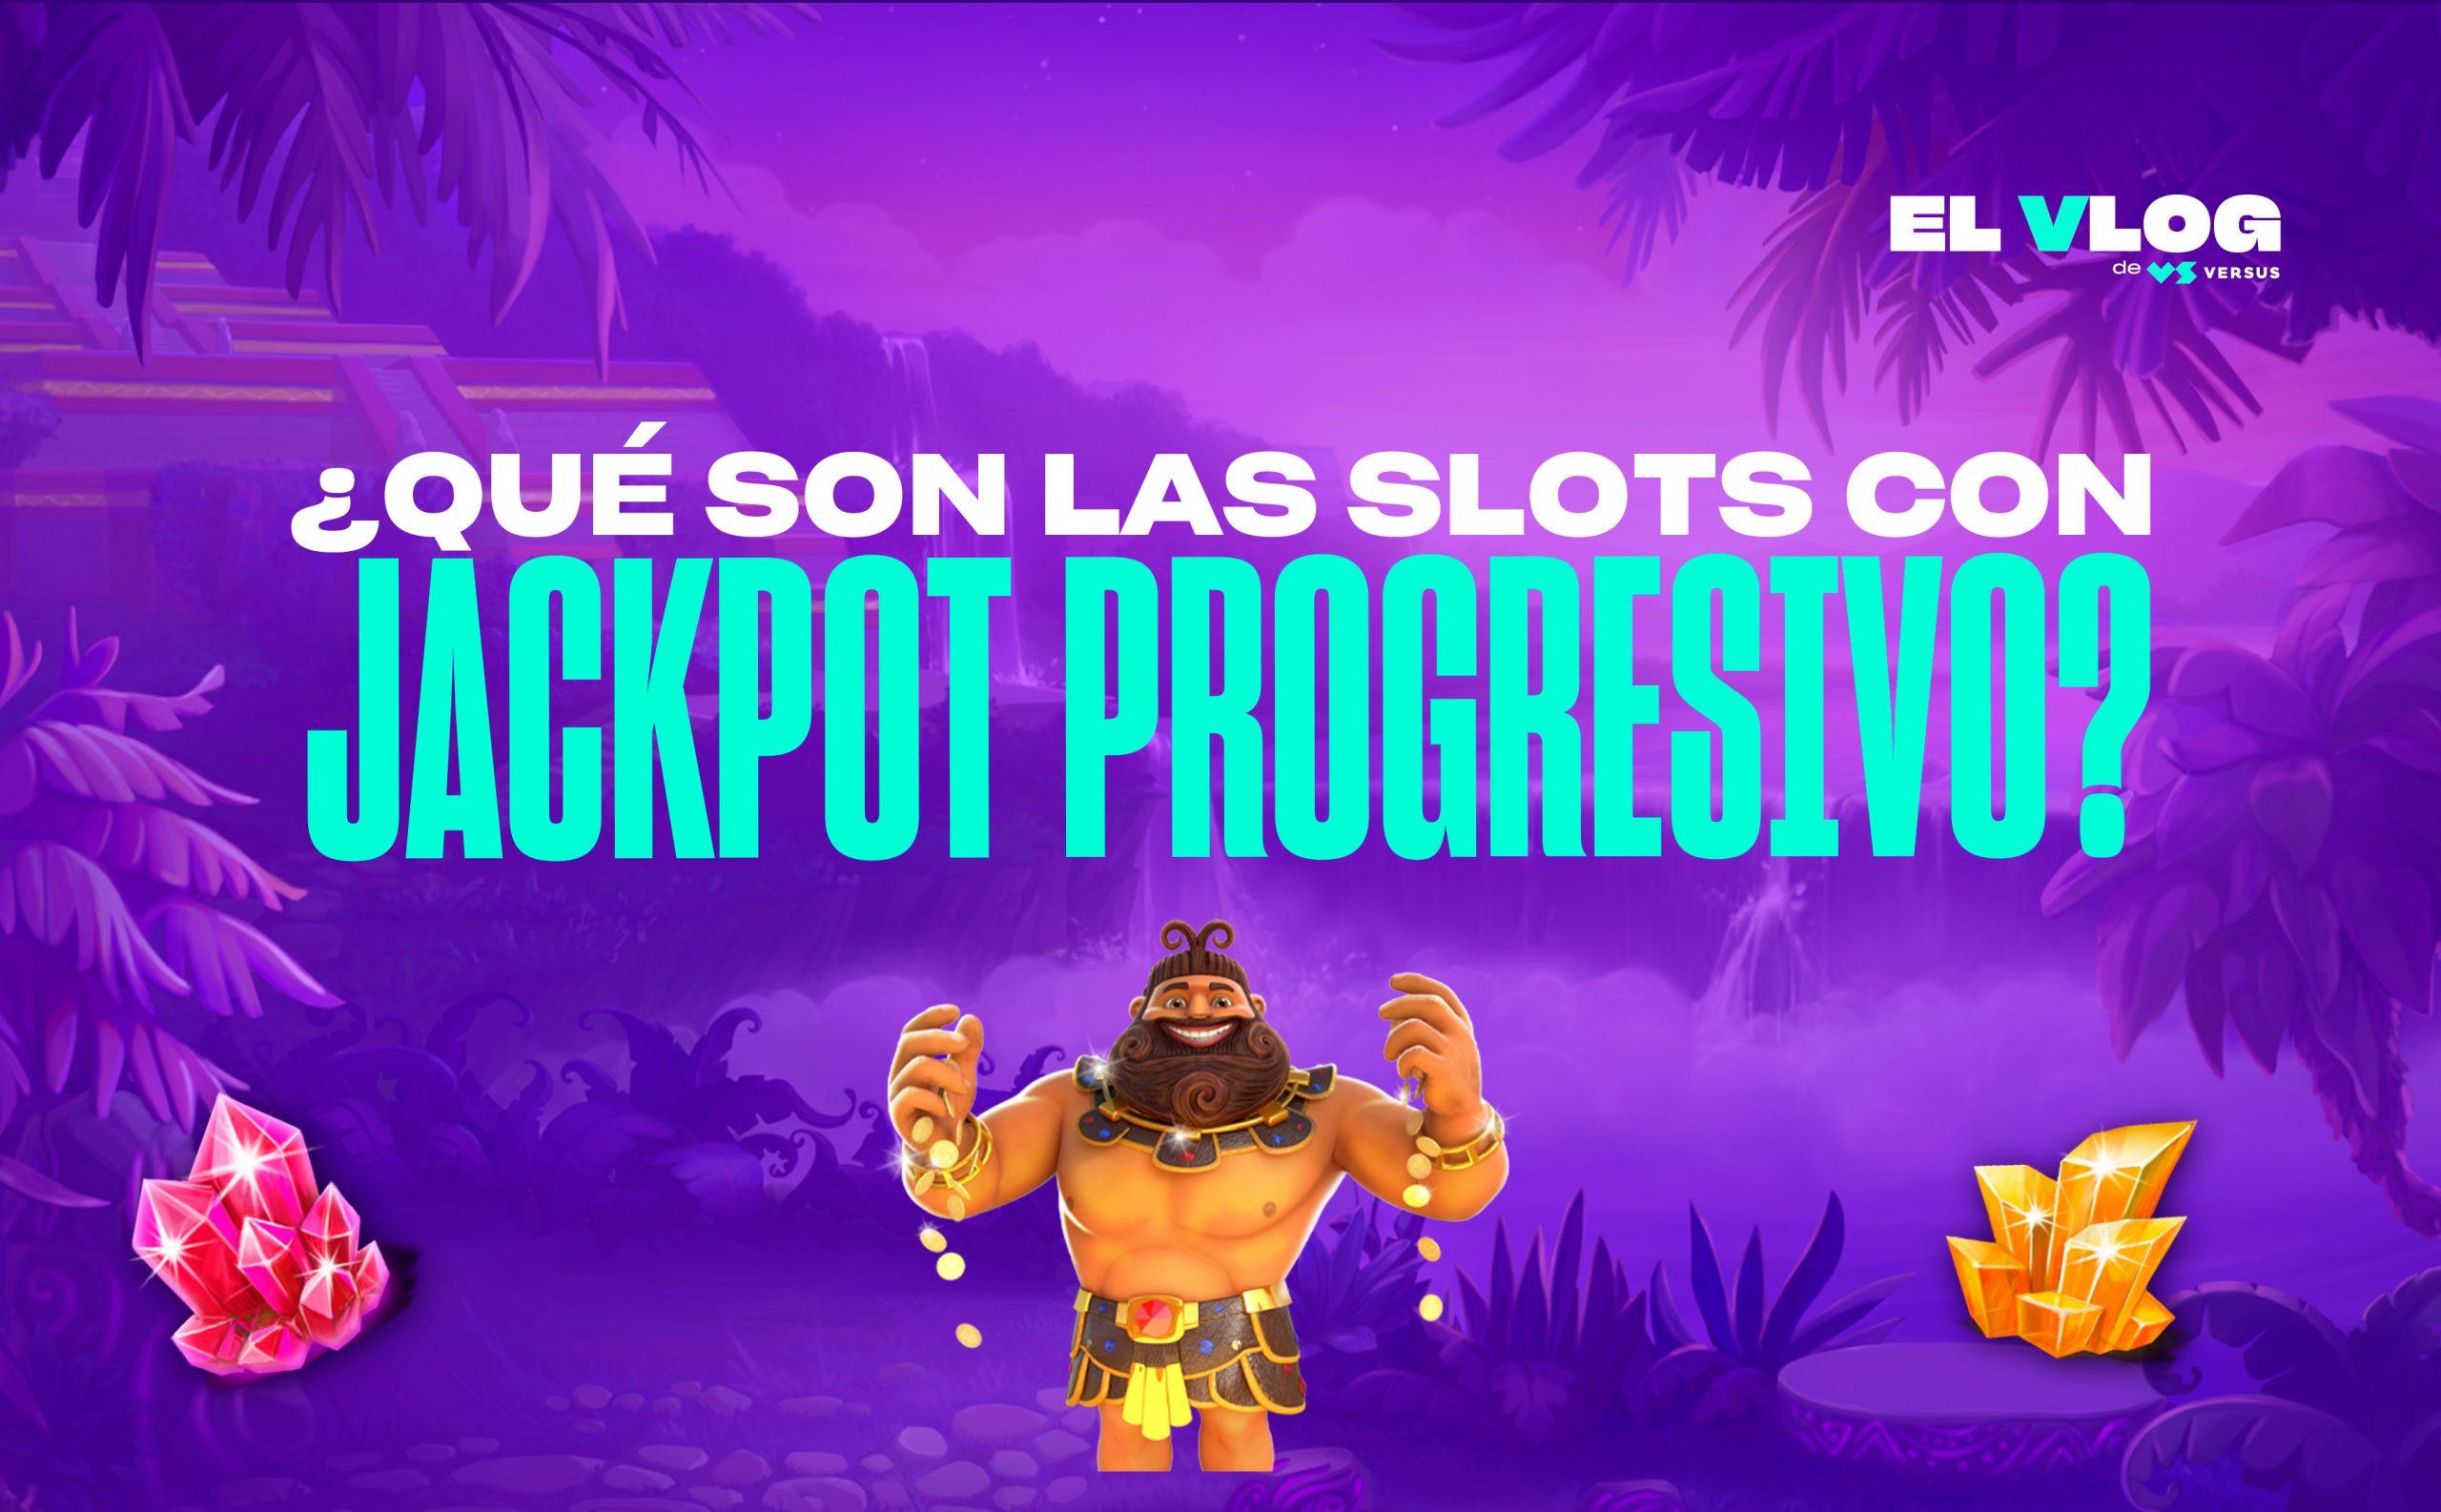 Jackpot progresivo en casinos en español